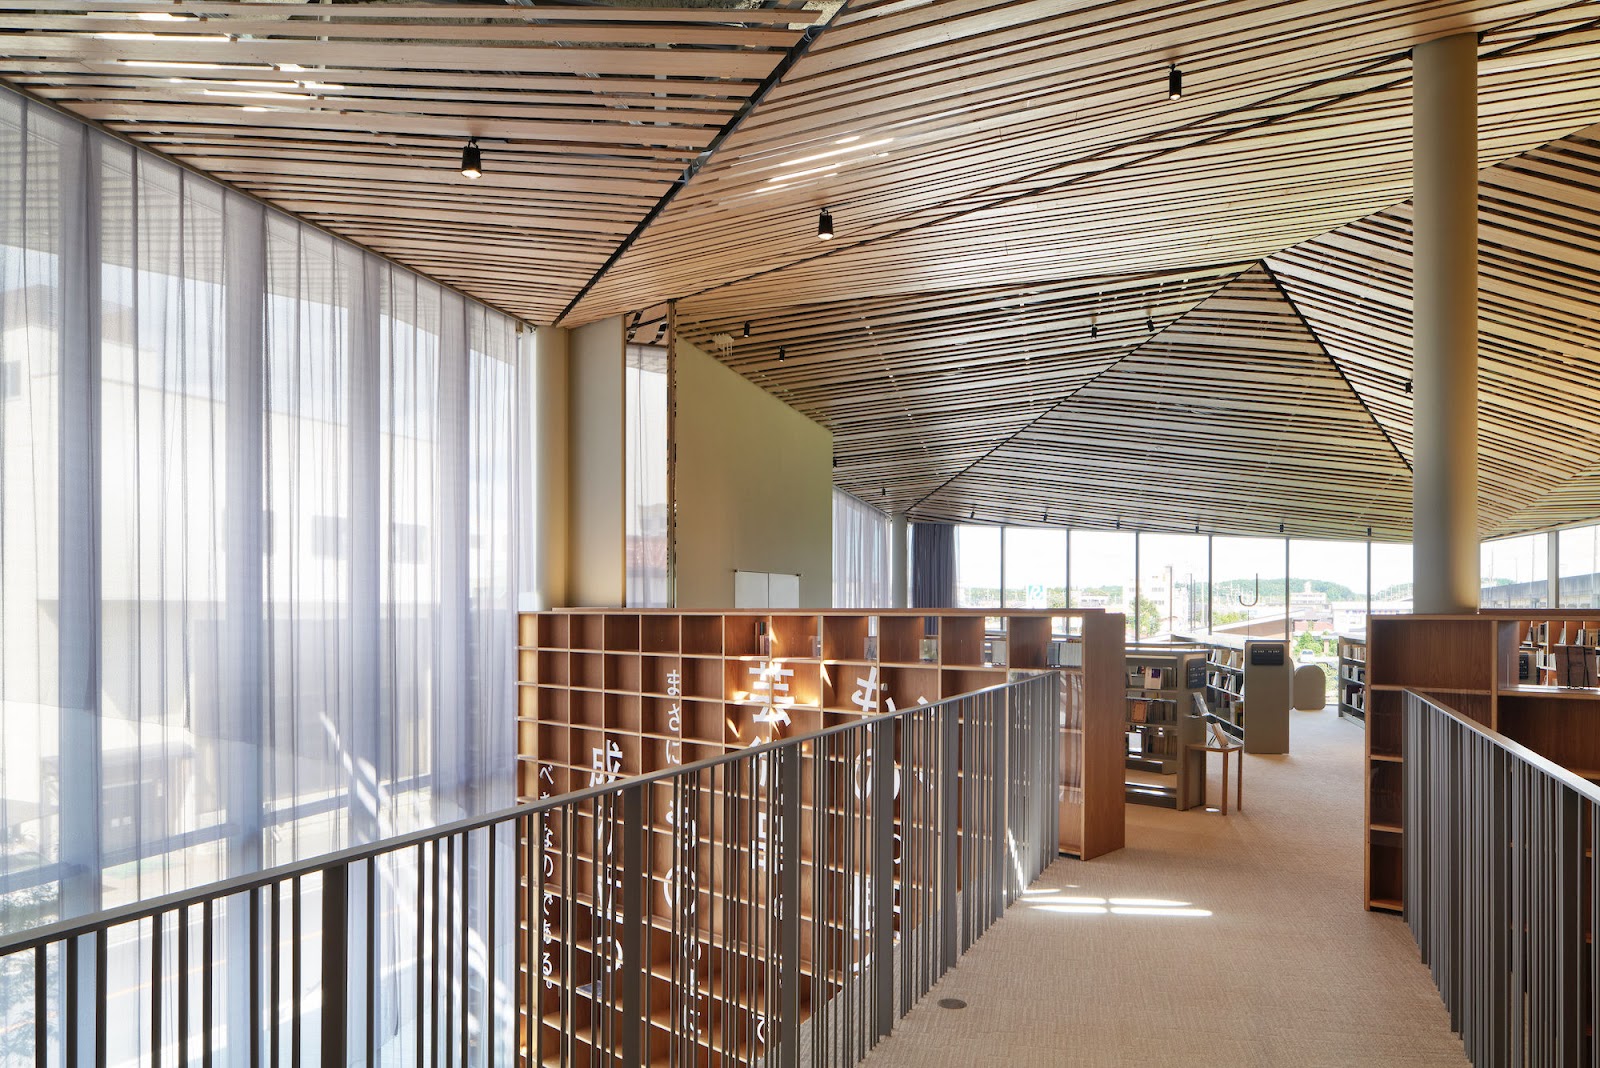 สุดยอดห้องสมุดสมัยใหม่ ออกแบบโดย Master Architects ในญี่ปุ่น ที่นักอ่านต้องไม่ควรพลาด!  8